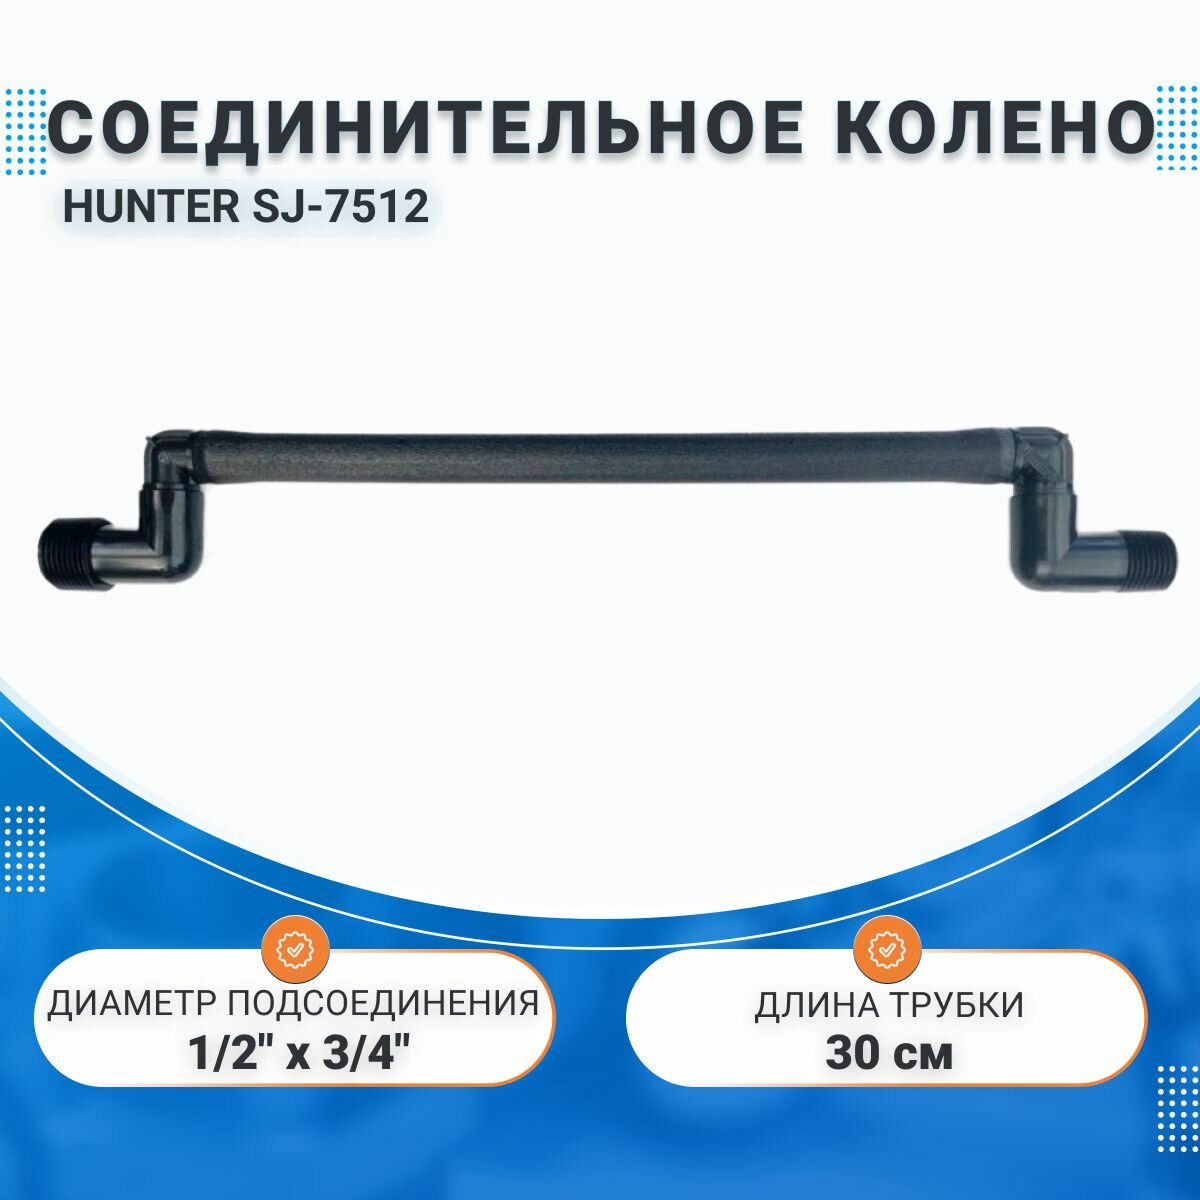 Соединительное колено HUNTER SJ-7512 (30см) 3/4" х 1/2"